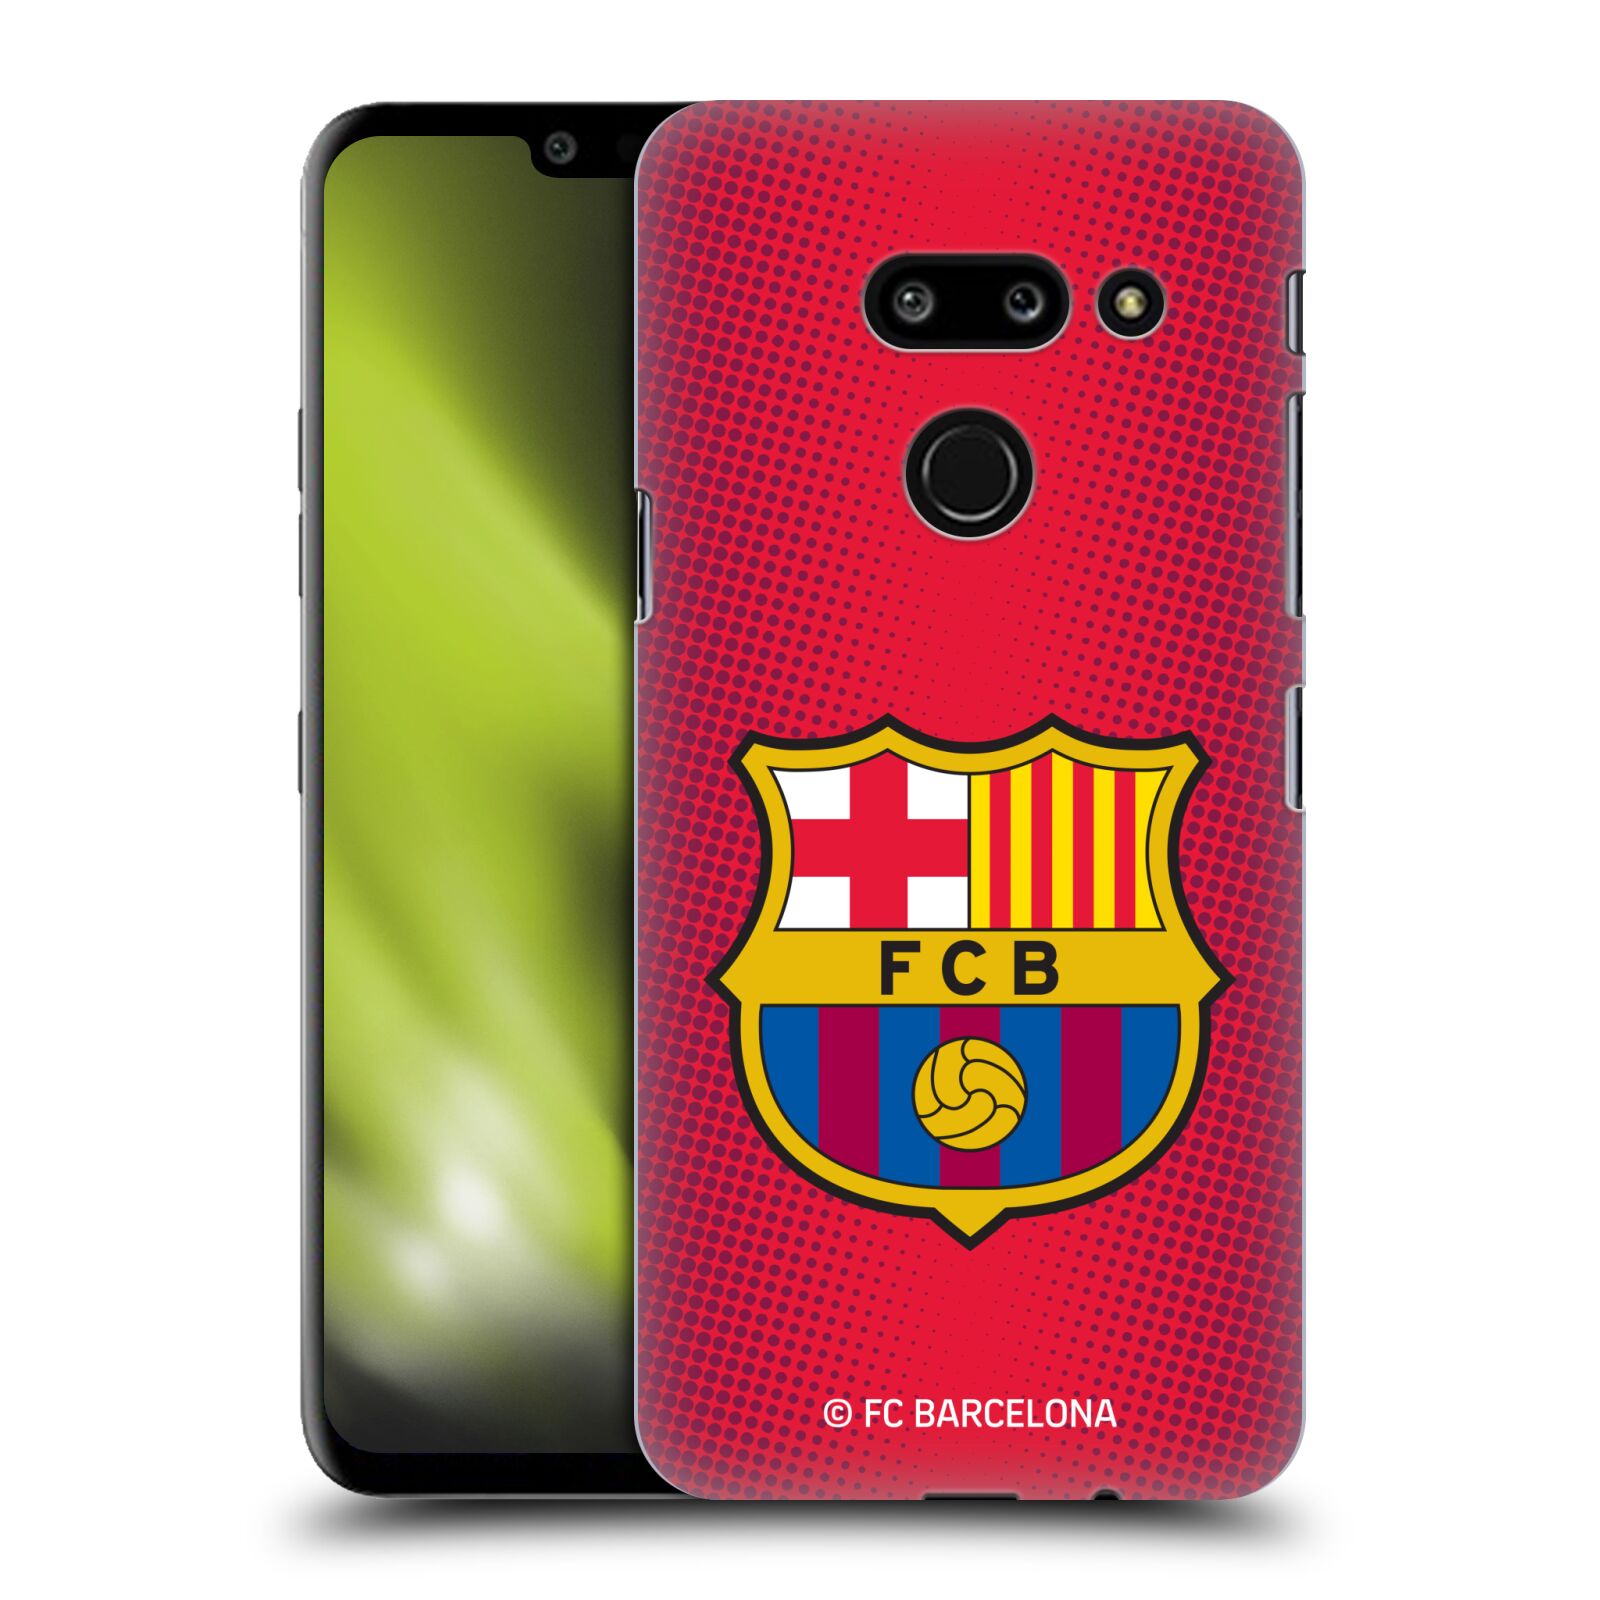 Obal na mobil LG G8 ThinQ - HEAD CASE - FC BARCELONA - Velký znak červená a modrá